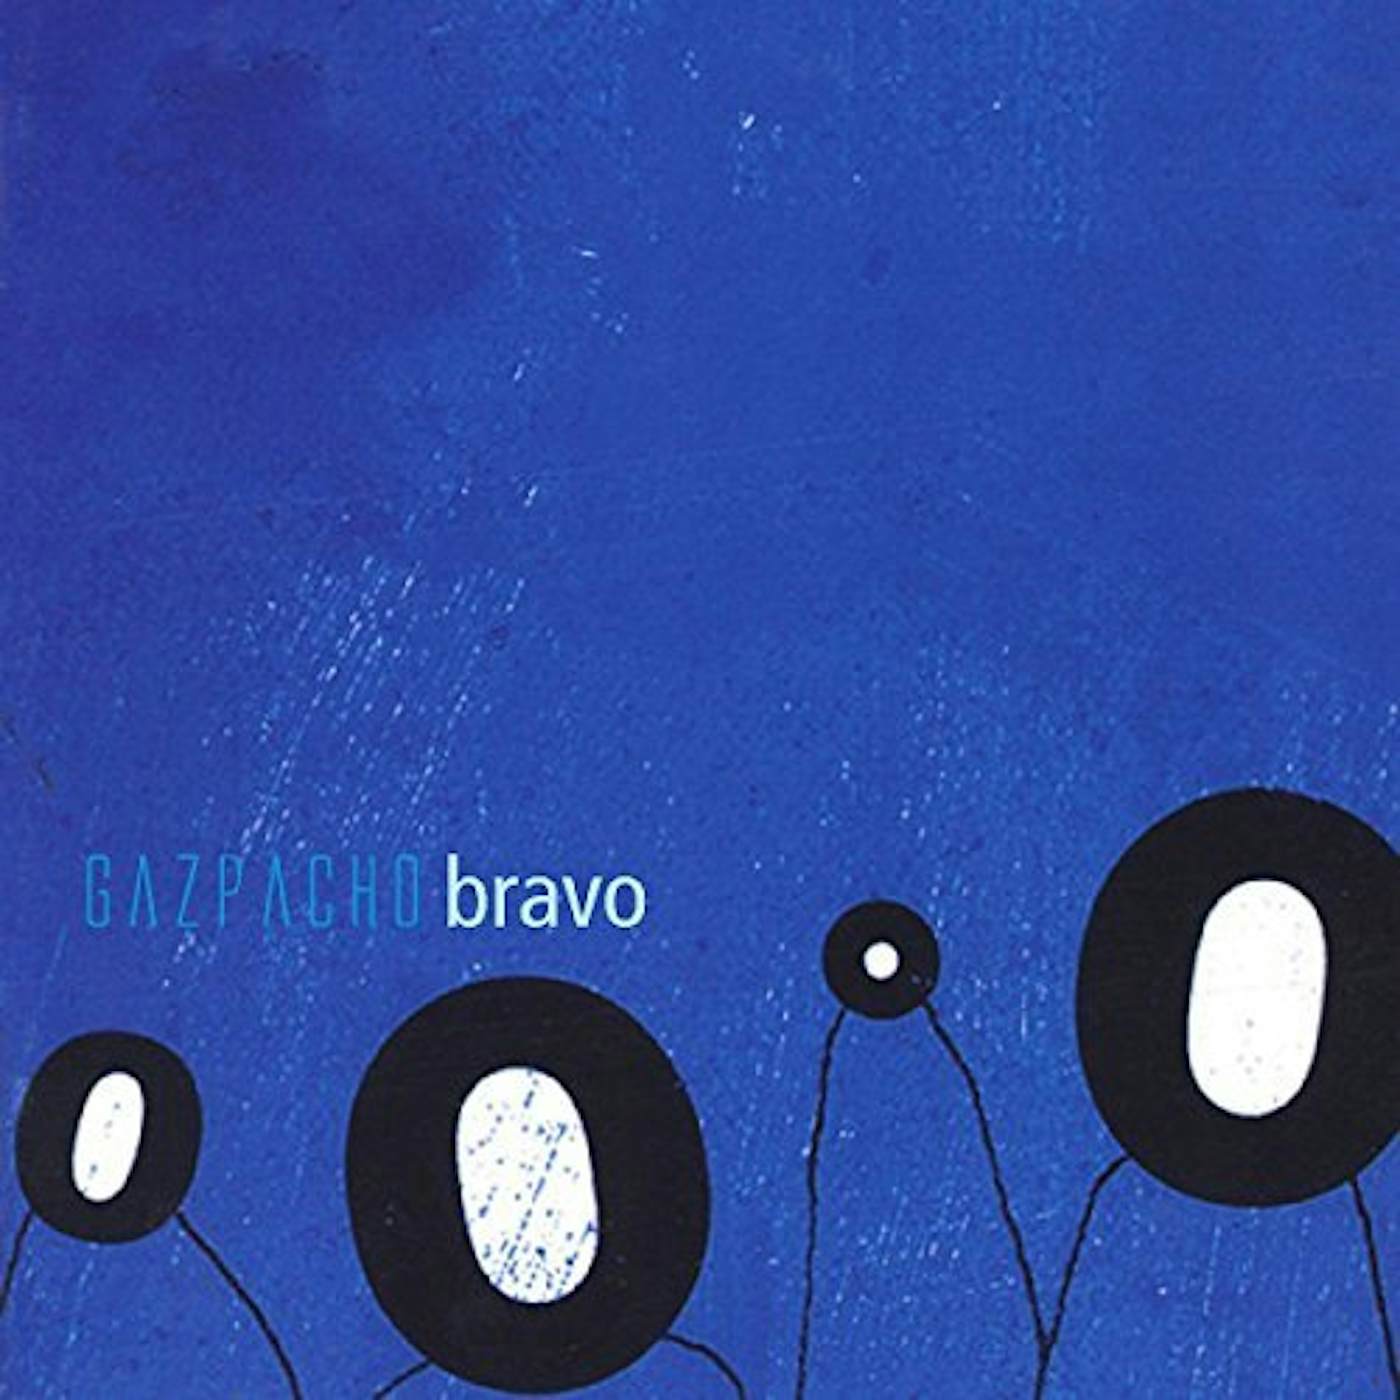 Gazpacho Bravo Vinyl Record